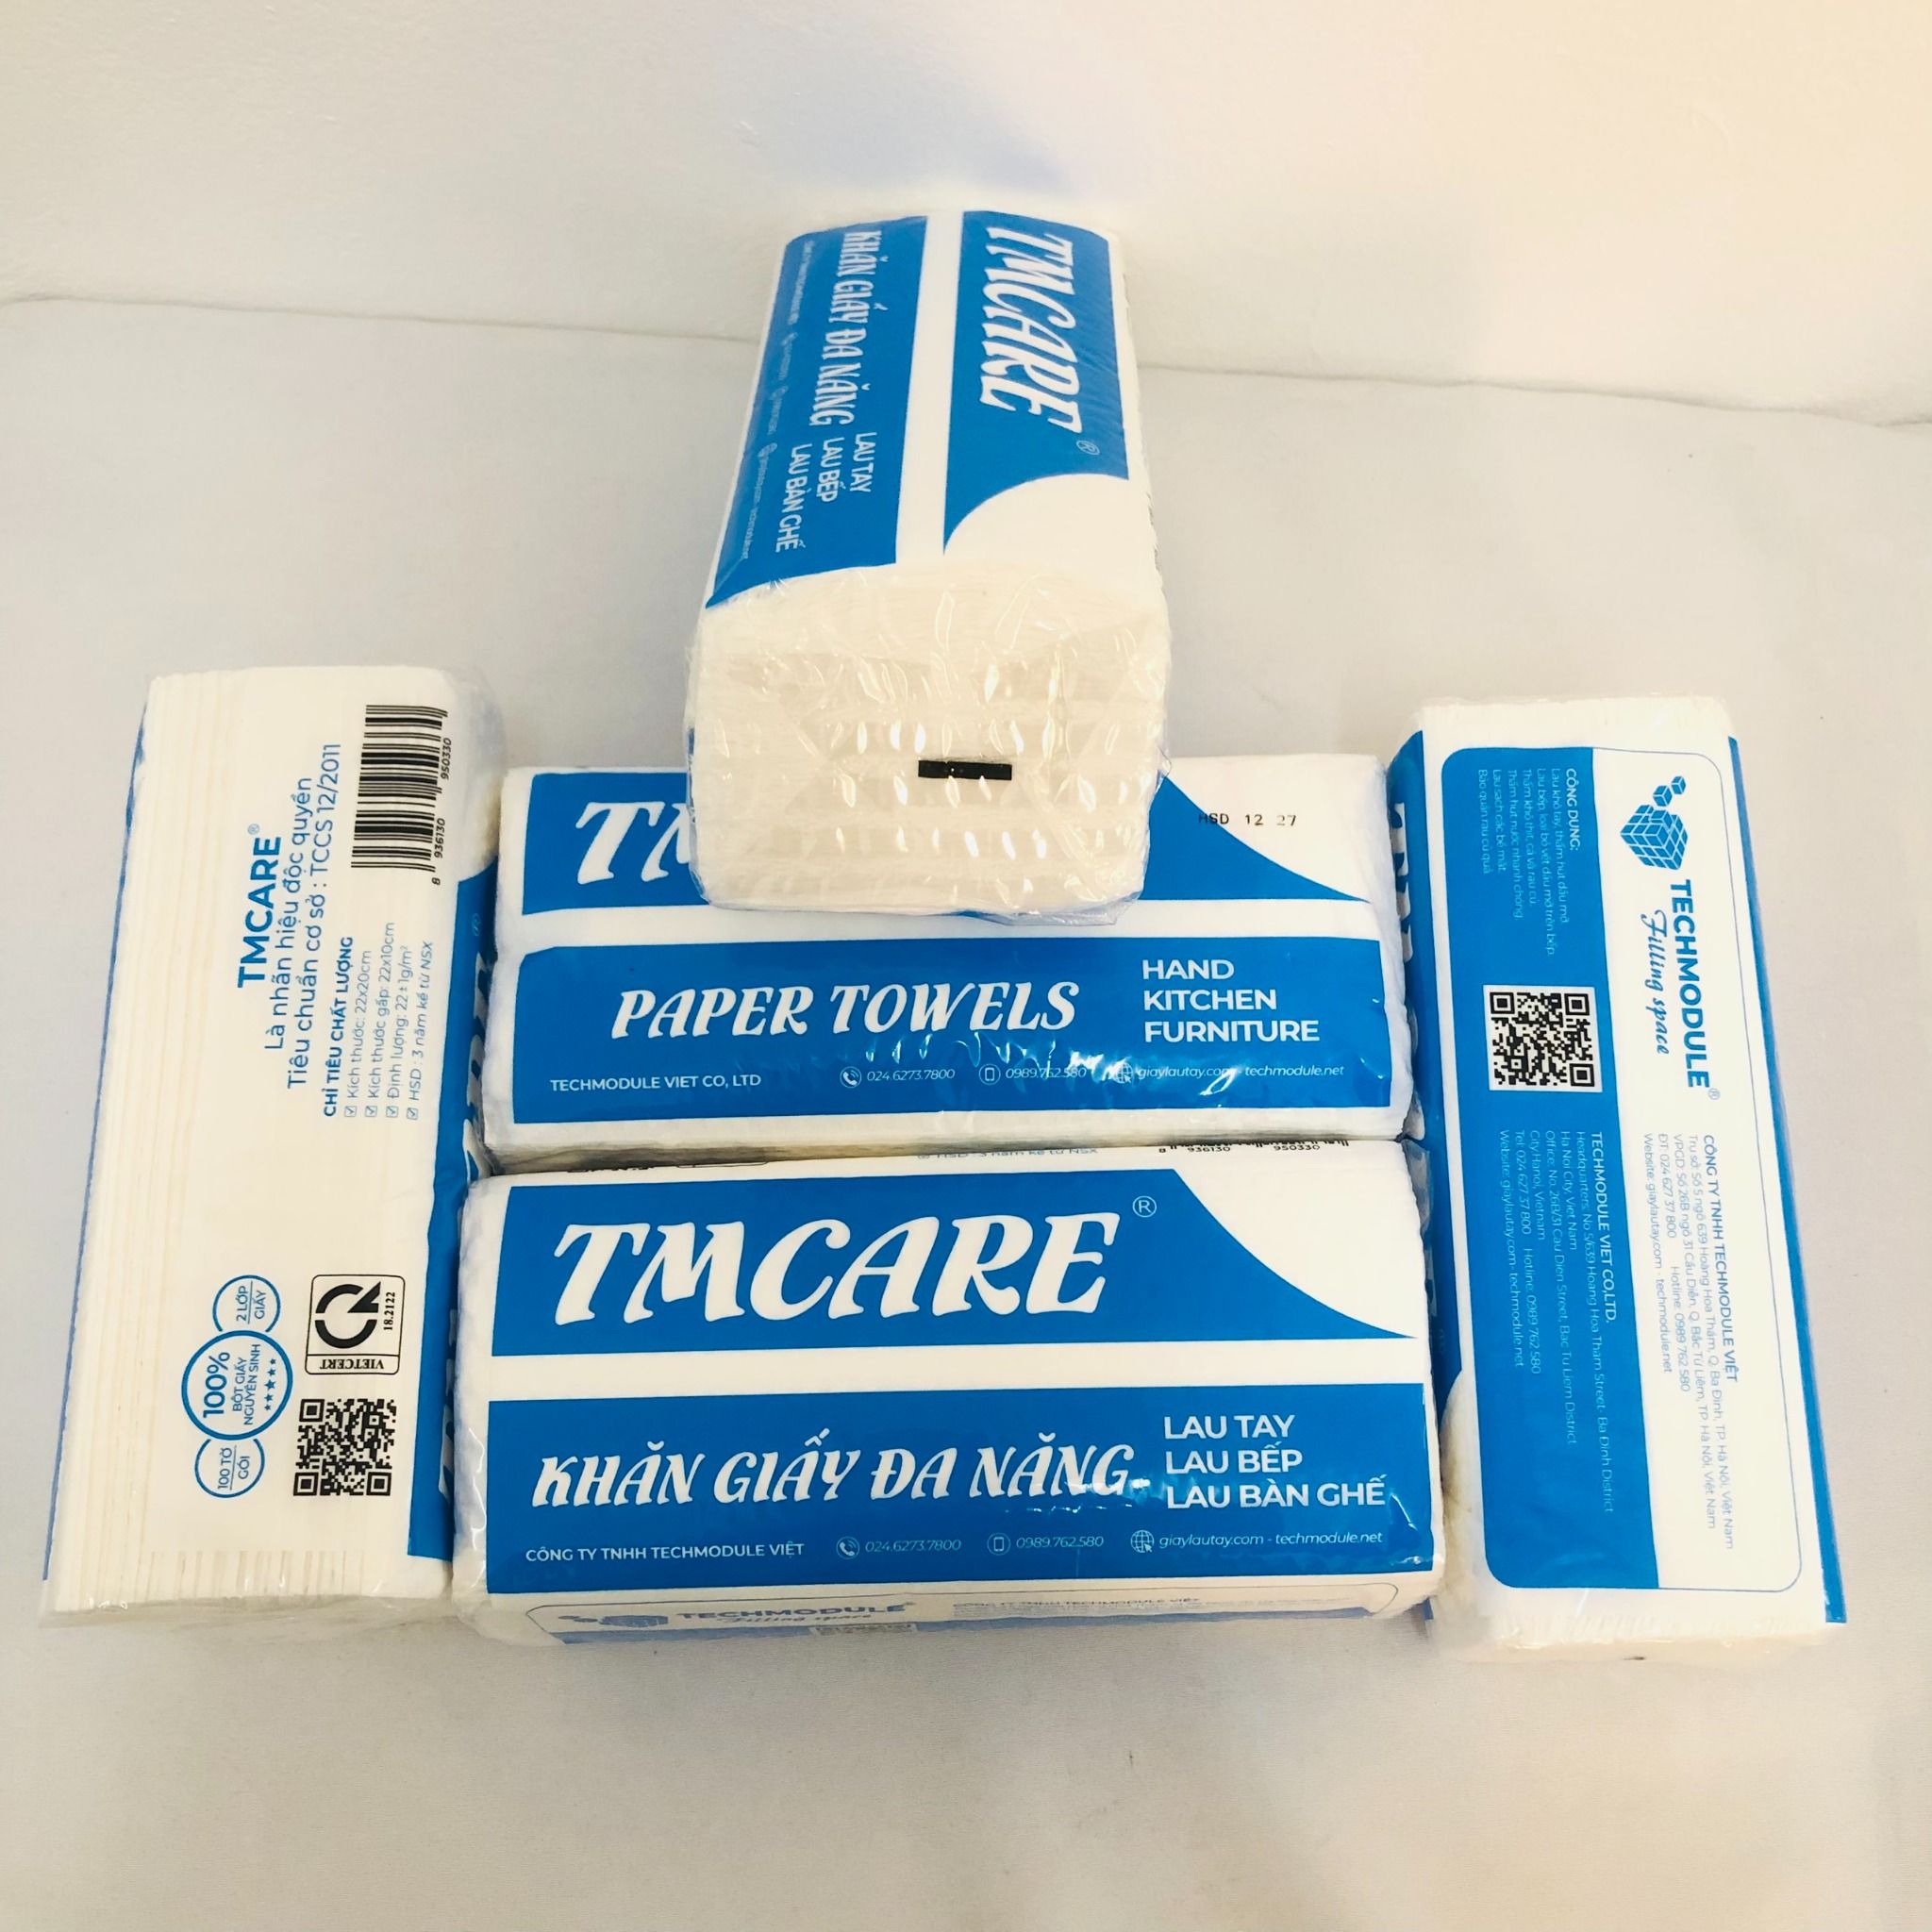  Combo 20 gói Khăn giấy lau tay đa năng TMCARE Premium Xanh, 100% bột giấy nguyên sinh - 100 tờ - vệ sinh sau và trong bữa ăn 